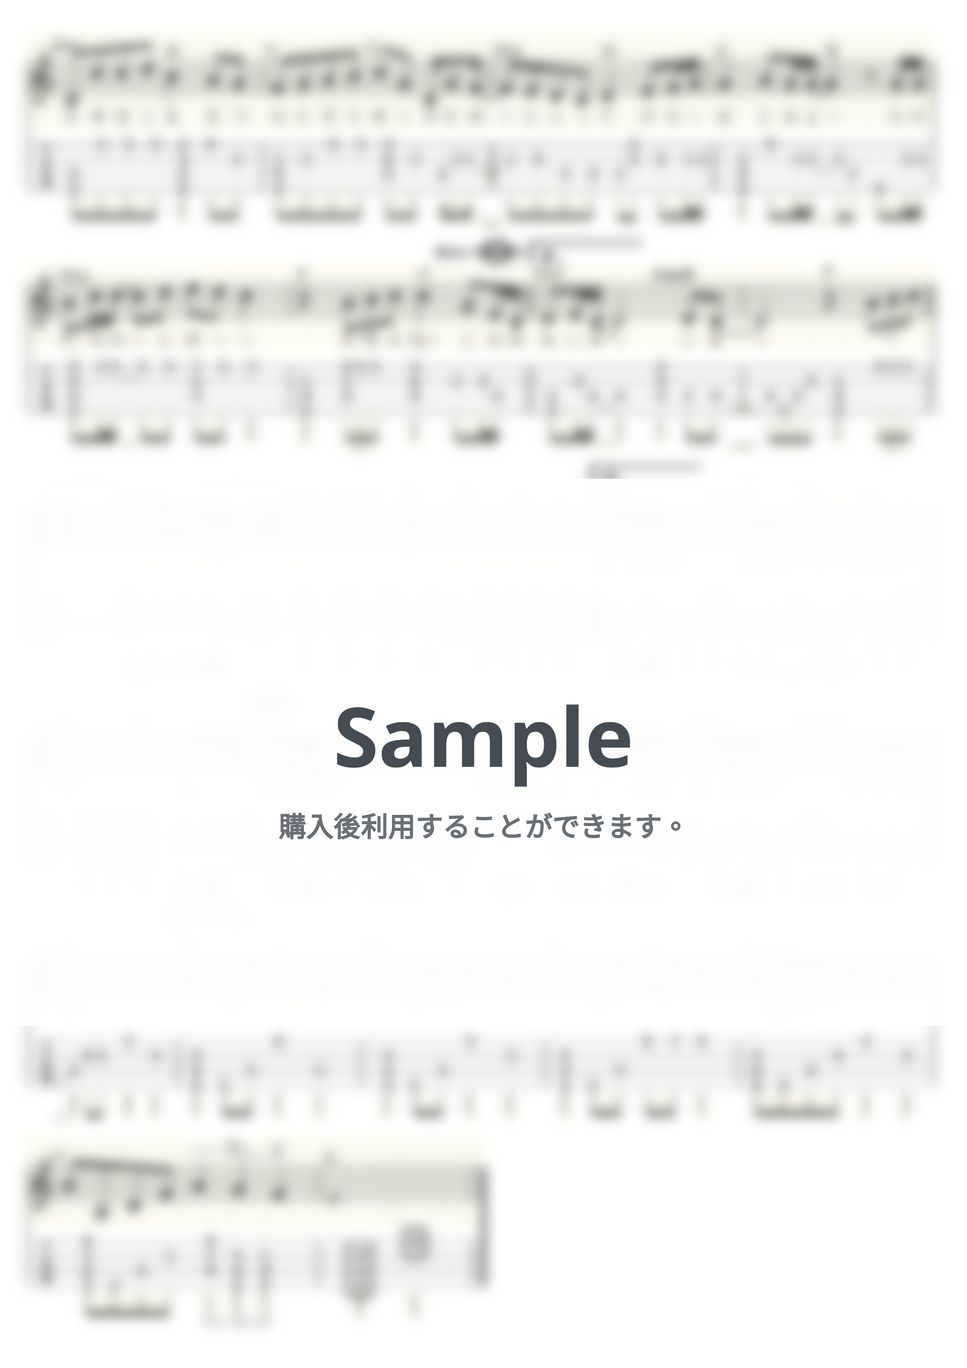 森山 直太朗 - さくら（独唱） (ｳｸﾚﾚｿﾛ/Low-G/中級) by ukulelepapa